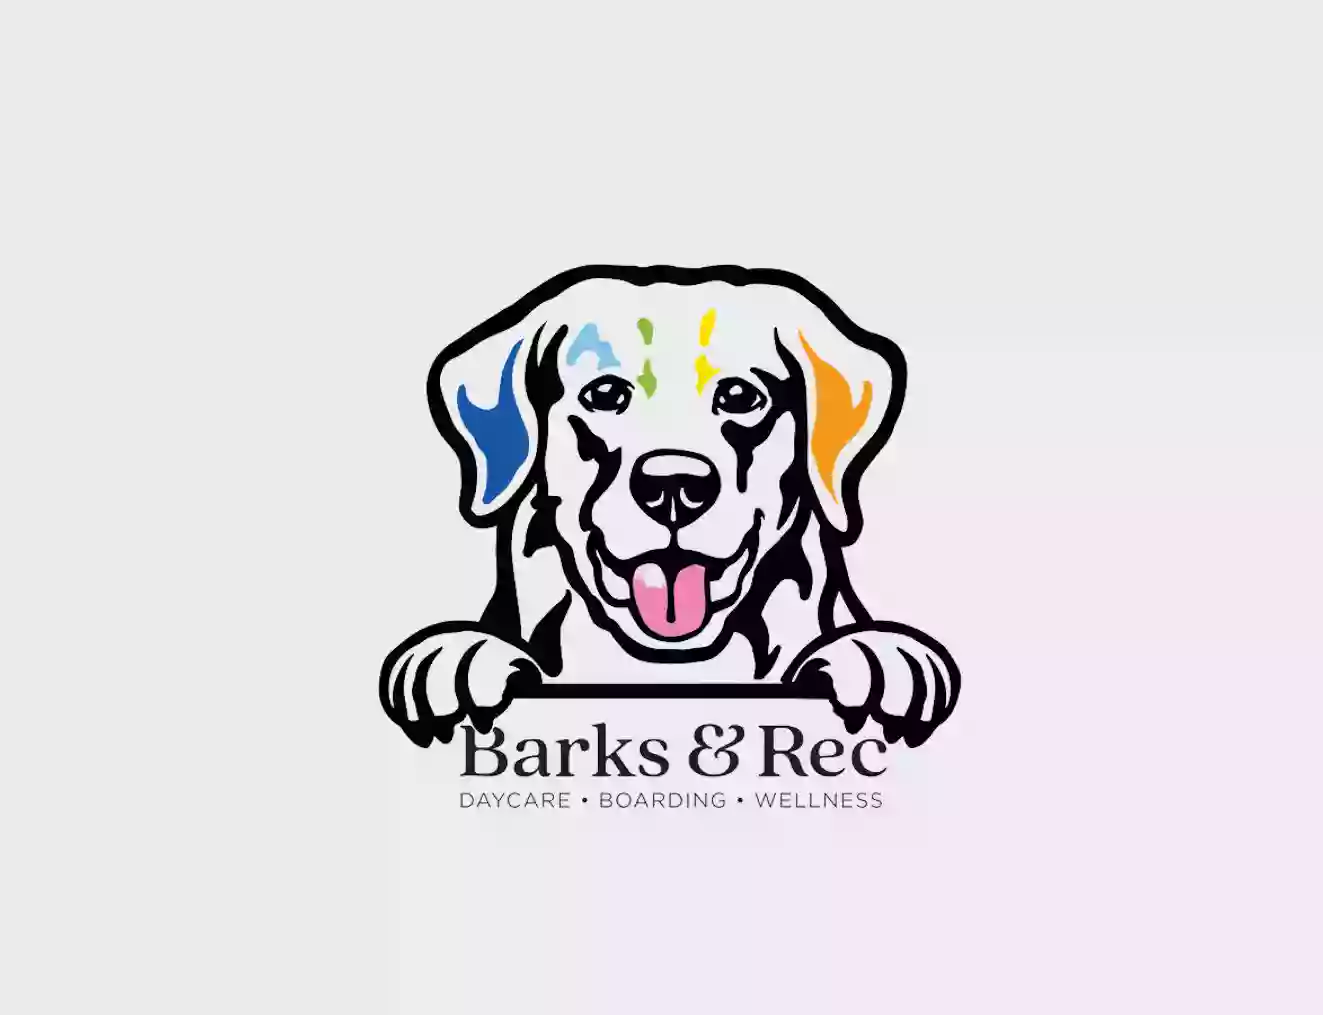 Barks & Rec